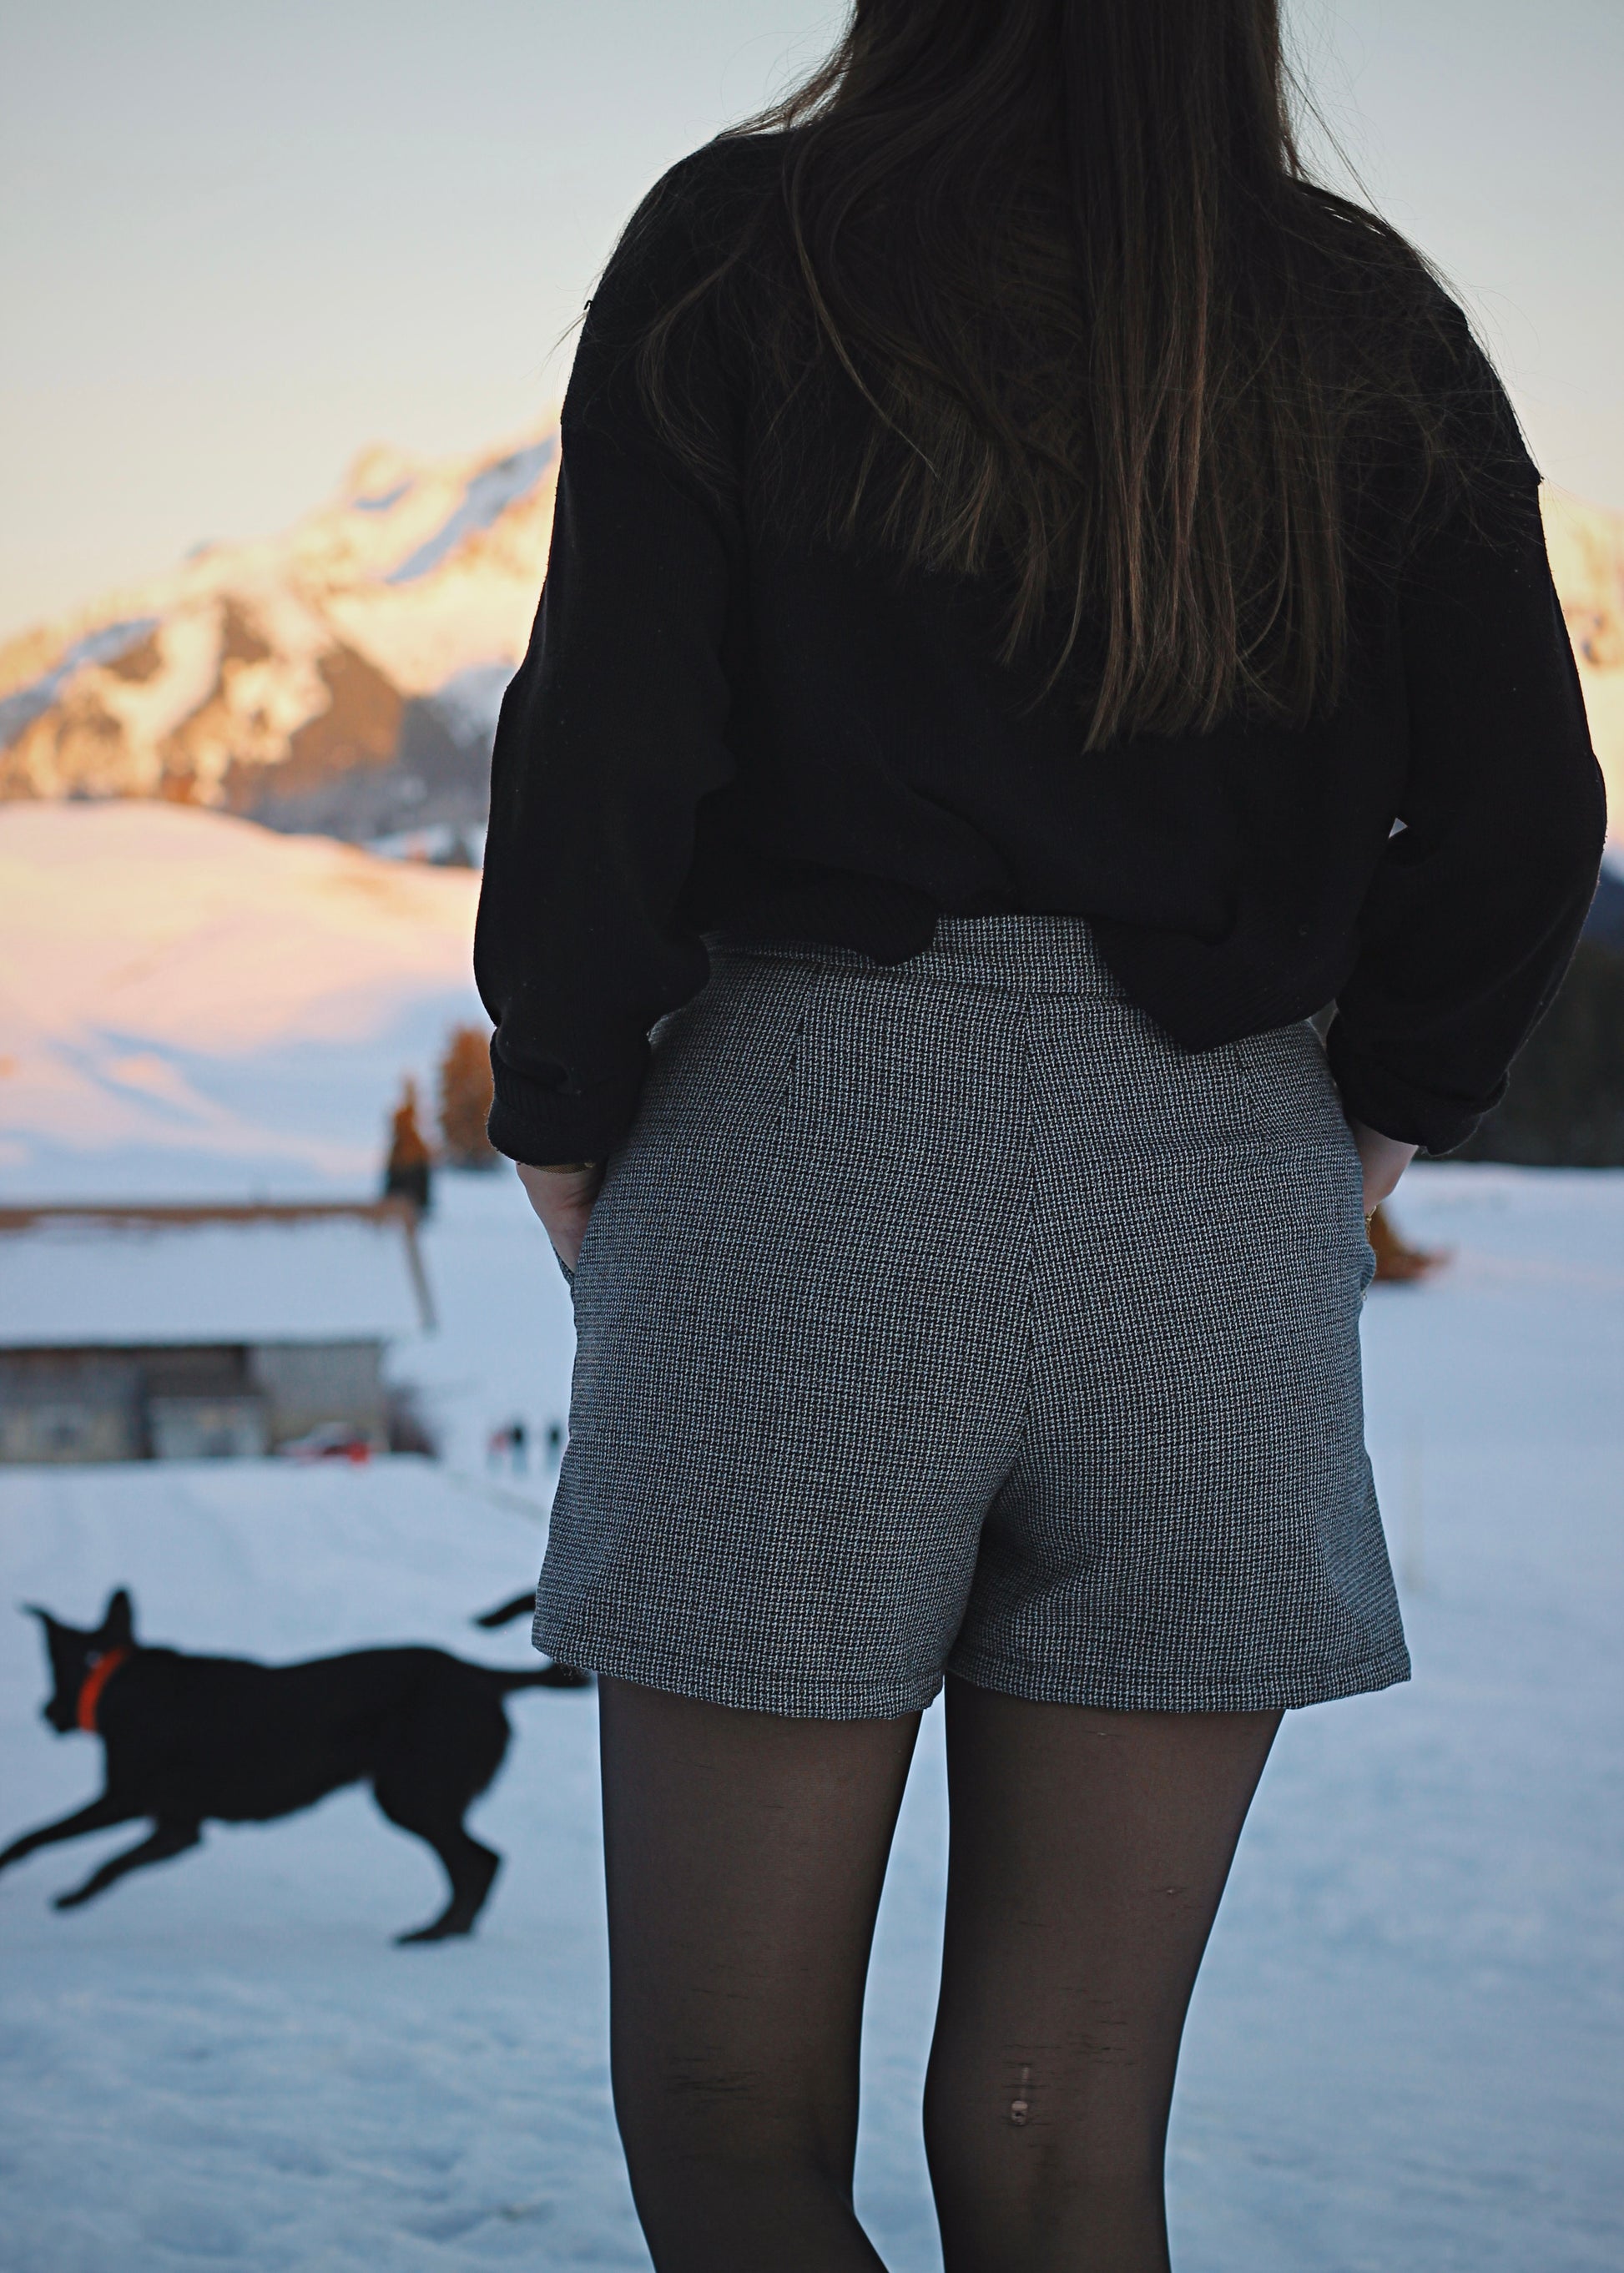 Jupe-short dans la neige, ambiance hivernale au soleil couchant, zoom sur la jupe de dos, chien en arrière-plan.